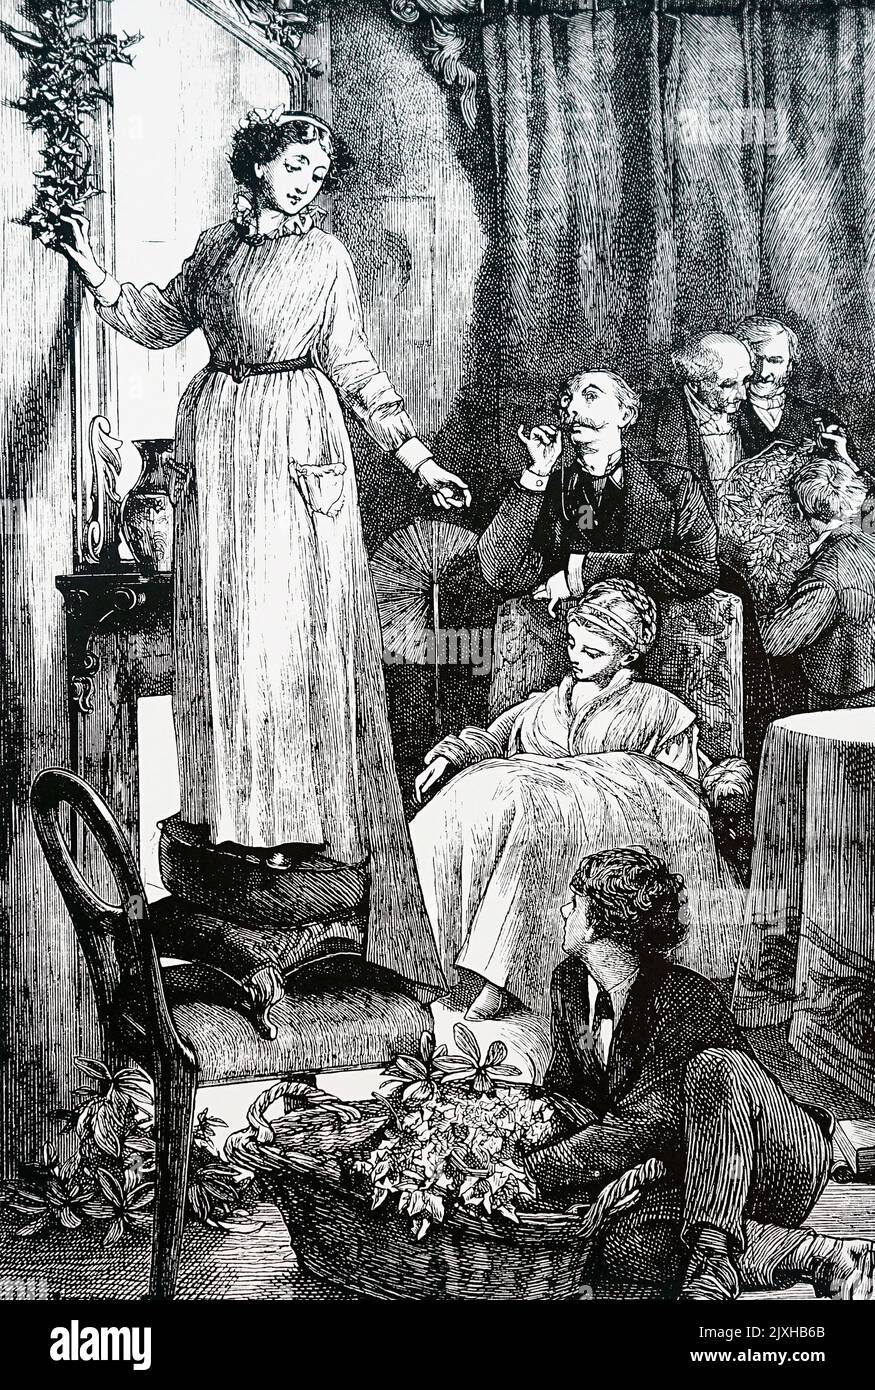 Abbildung einer Frau, die Weihnachtsdekorationen aufstellt, während das ungültige Kind der Familie traurig in das Feuer blickt. Datiert aus dem 19.. Jahrhundert Stockfoto